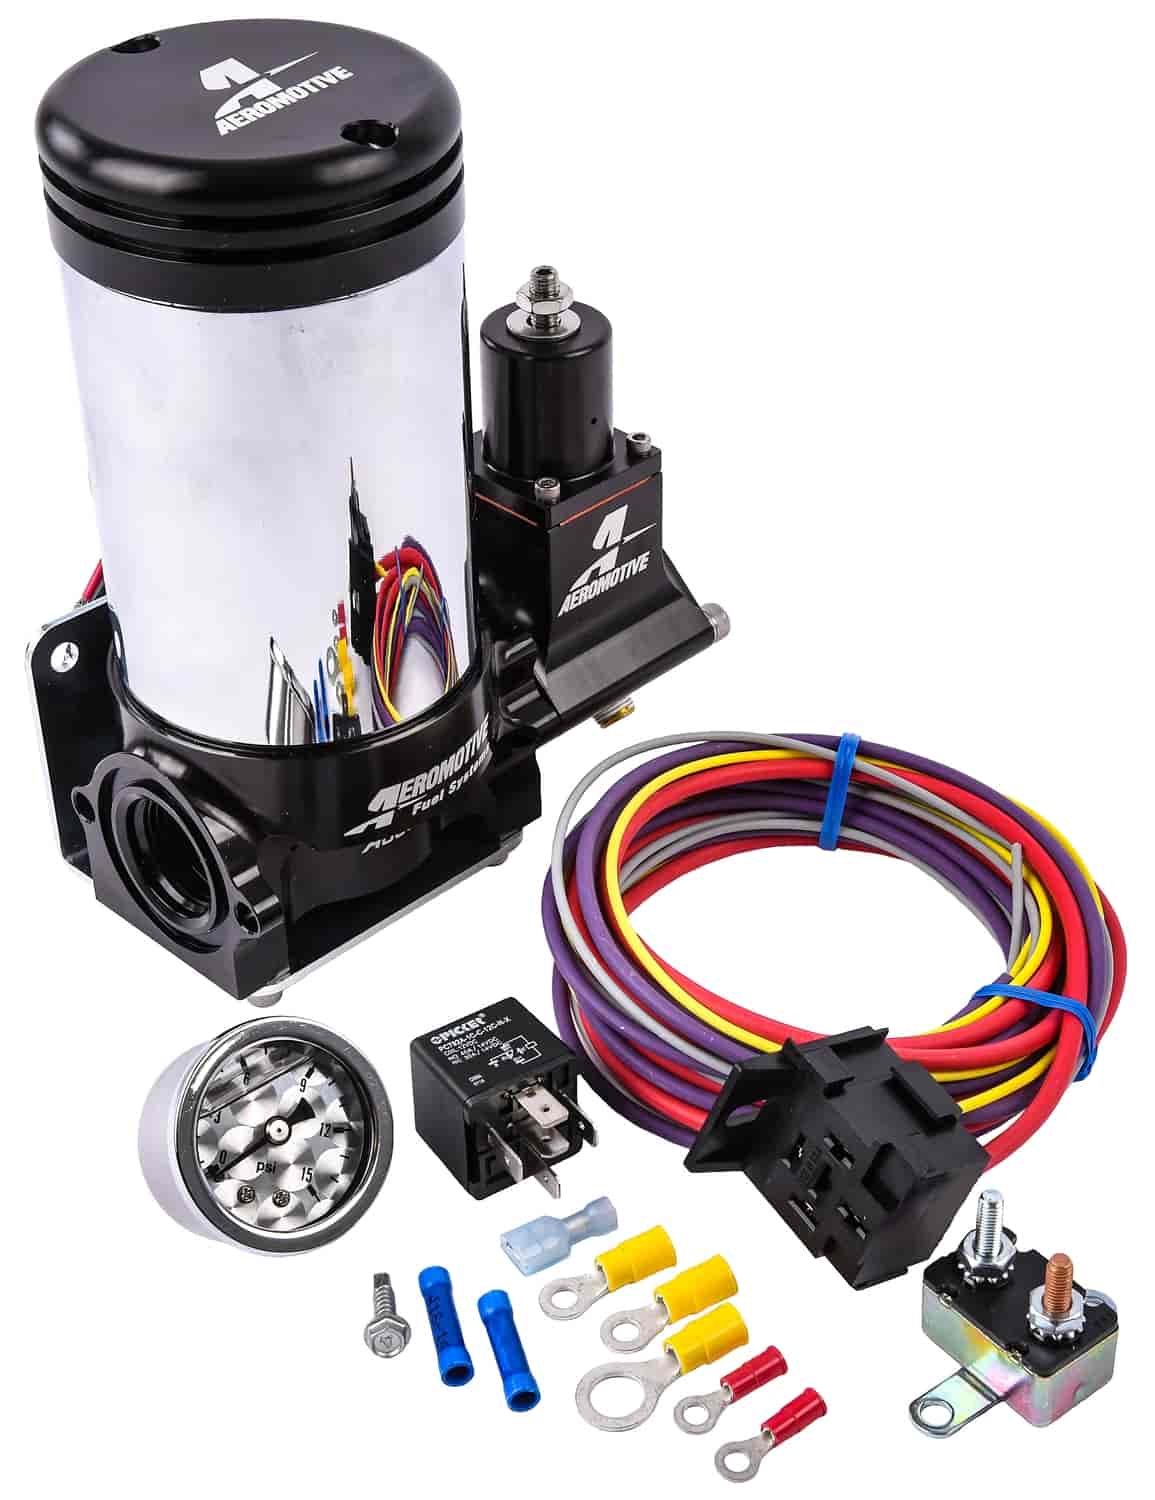 A3000 Fuel Pump Kit Includes: Aeromotive Fuel Pump Kit